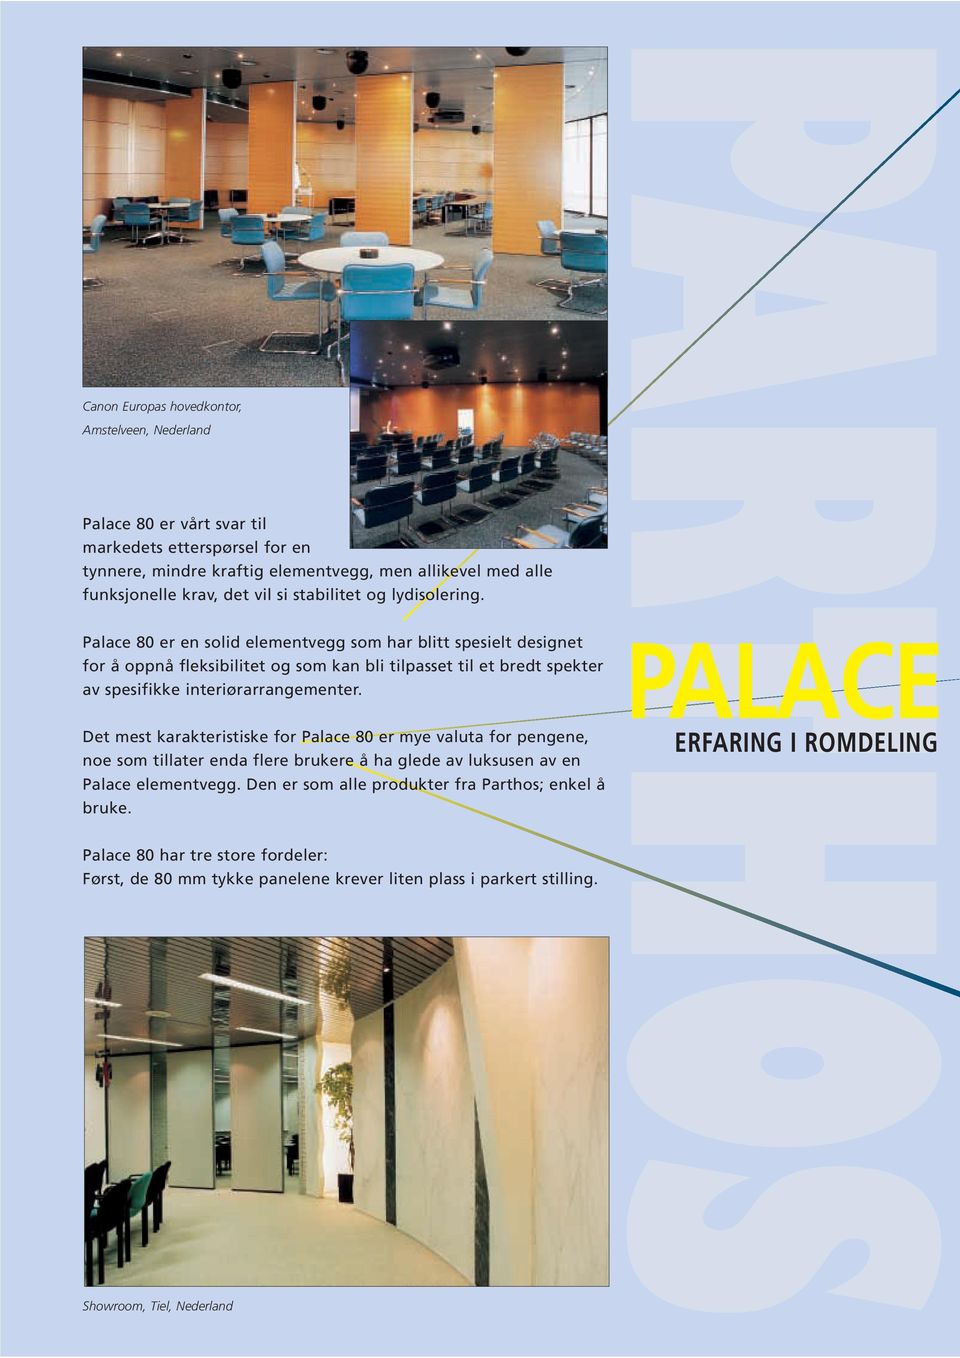 Palace 80 er en solid elementvegg som har blitt spesielt designet for å oppnå fleksibilitet og som kan bli tilpasset til et bredt spekter av spesifikke interiørarrangementer.